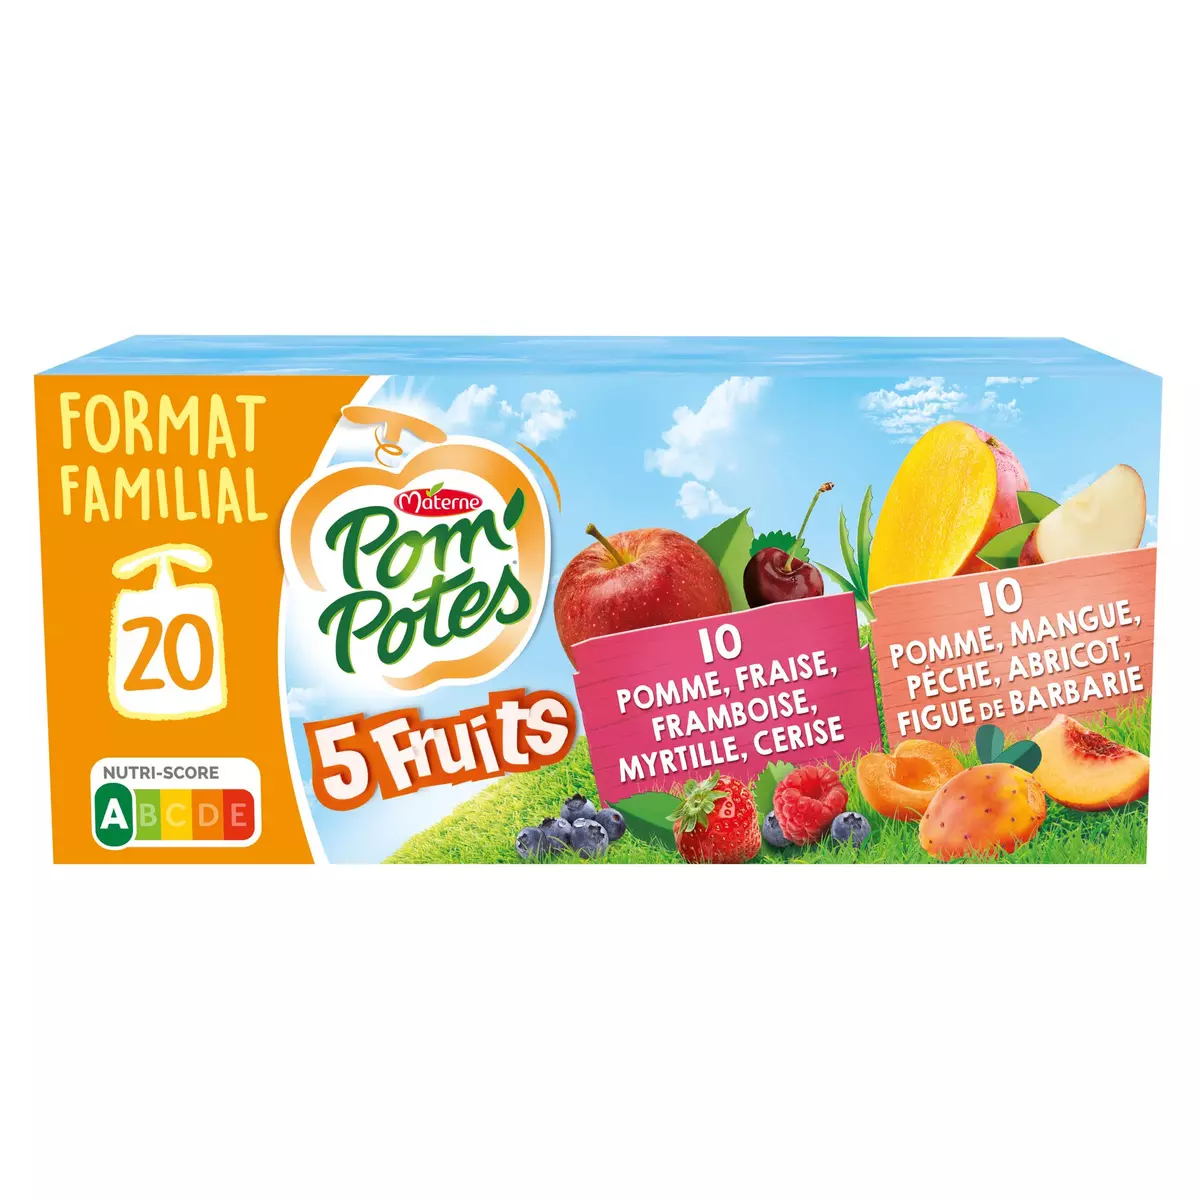 POM'POTES Gourdes compote 5 fruits pomme fraise framboise myrtille cerise et pomme mangue pèche abricot figue de Barbare 1080g